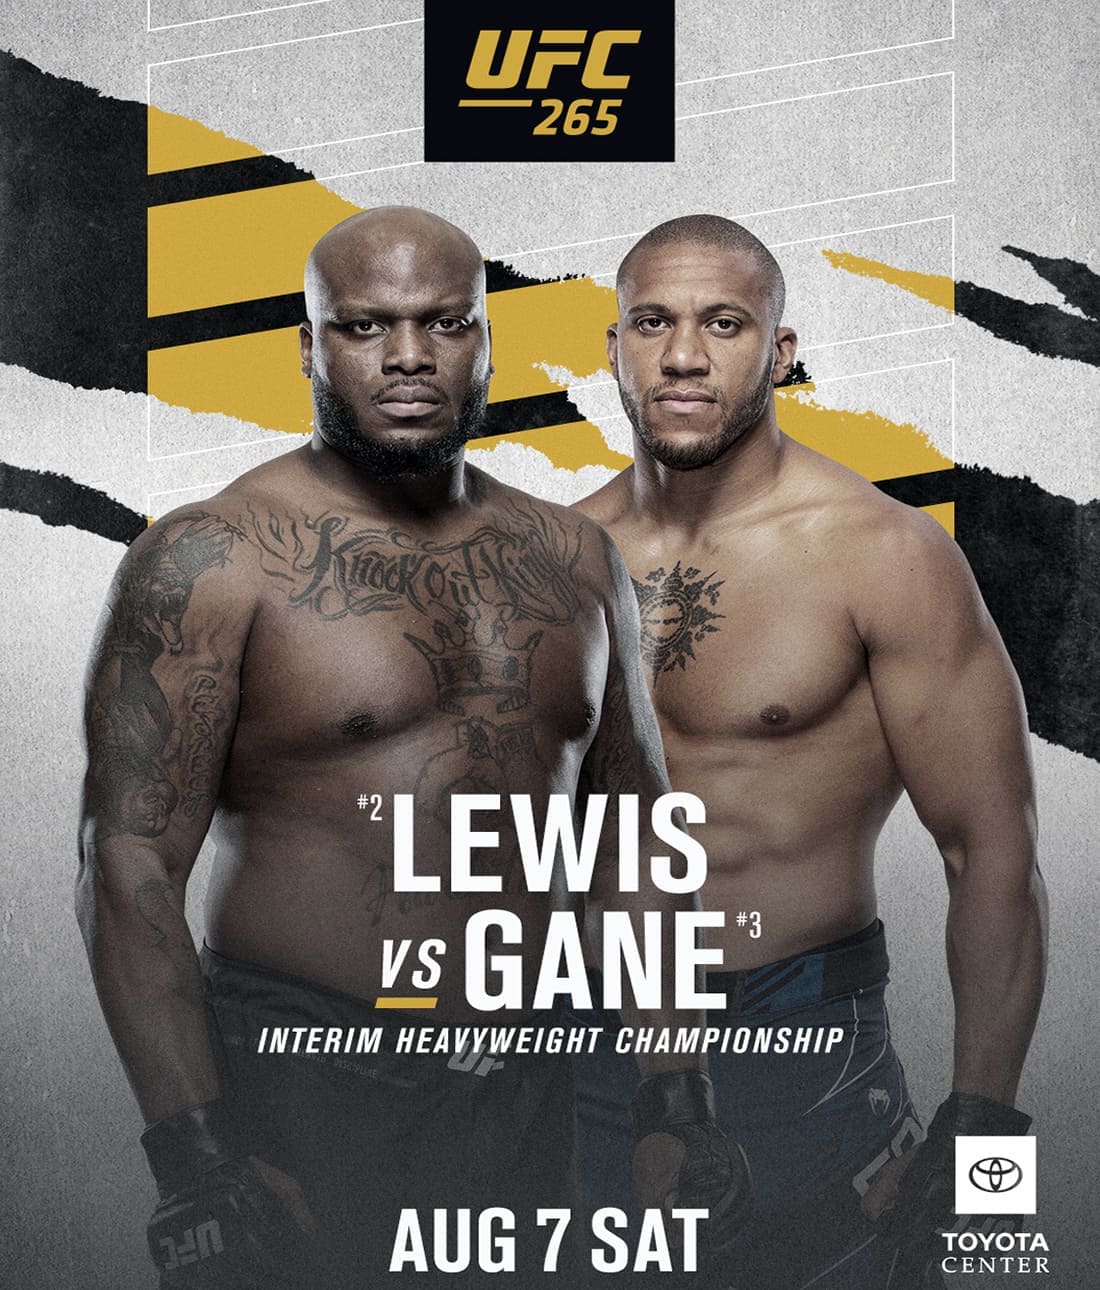 UFC 265: Льюис - Ган дата проведения, кард, участники и результаты